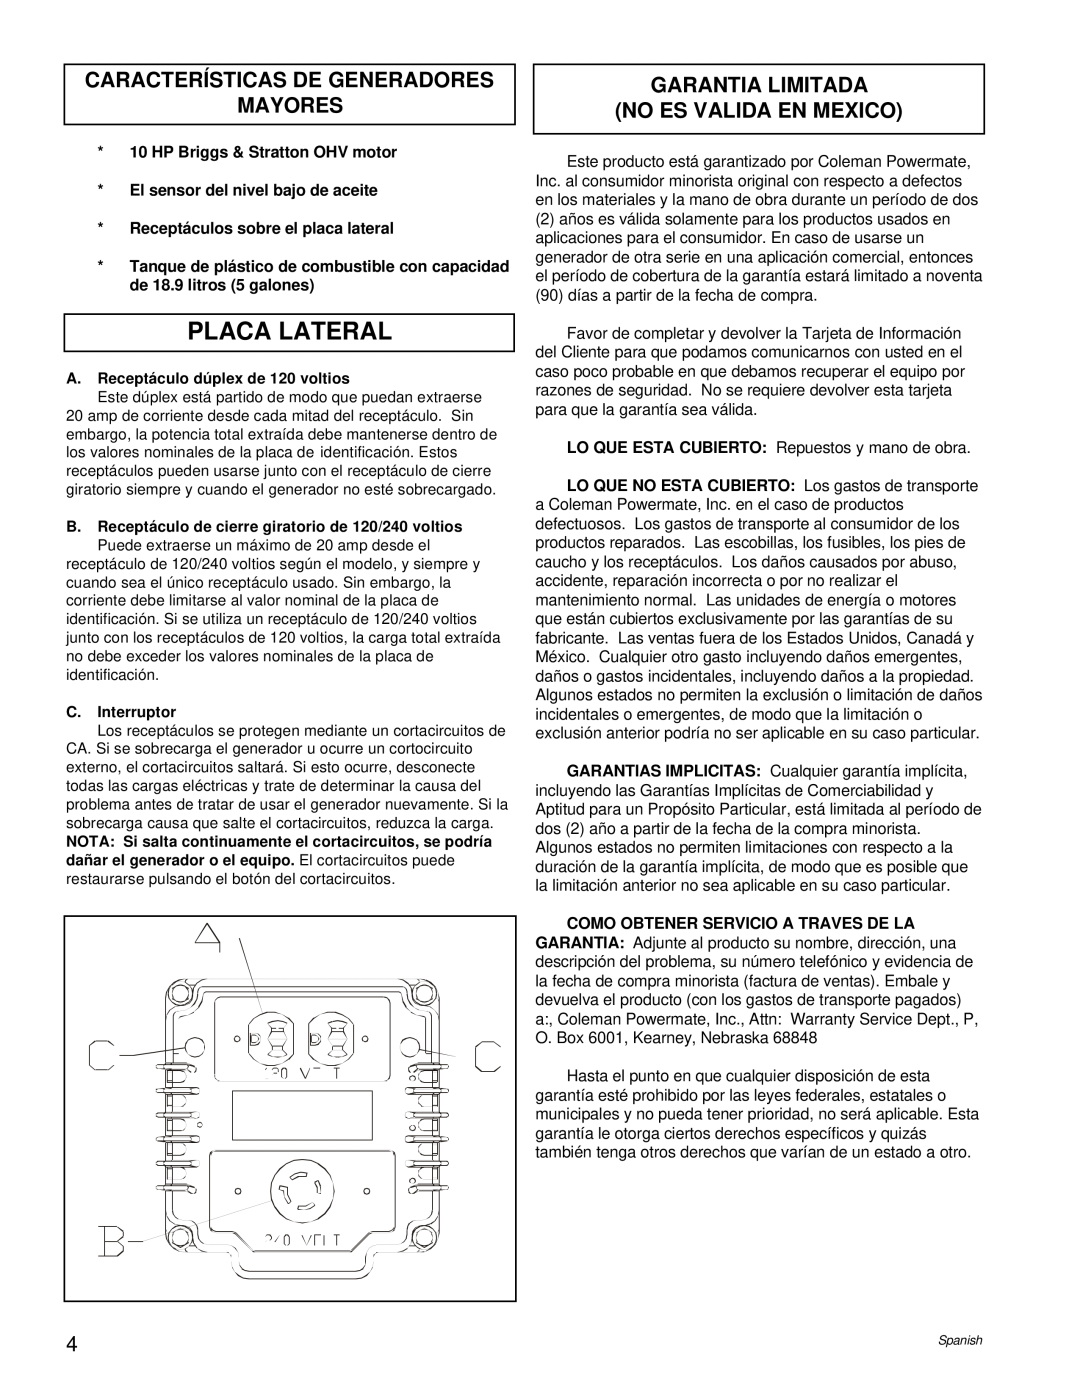 Coleman PM0545005 manual Placa Lateral, Características De Generadores Mayores, Garantia Limitada No Es Valida En Mexico 